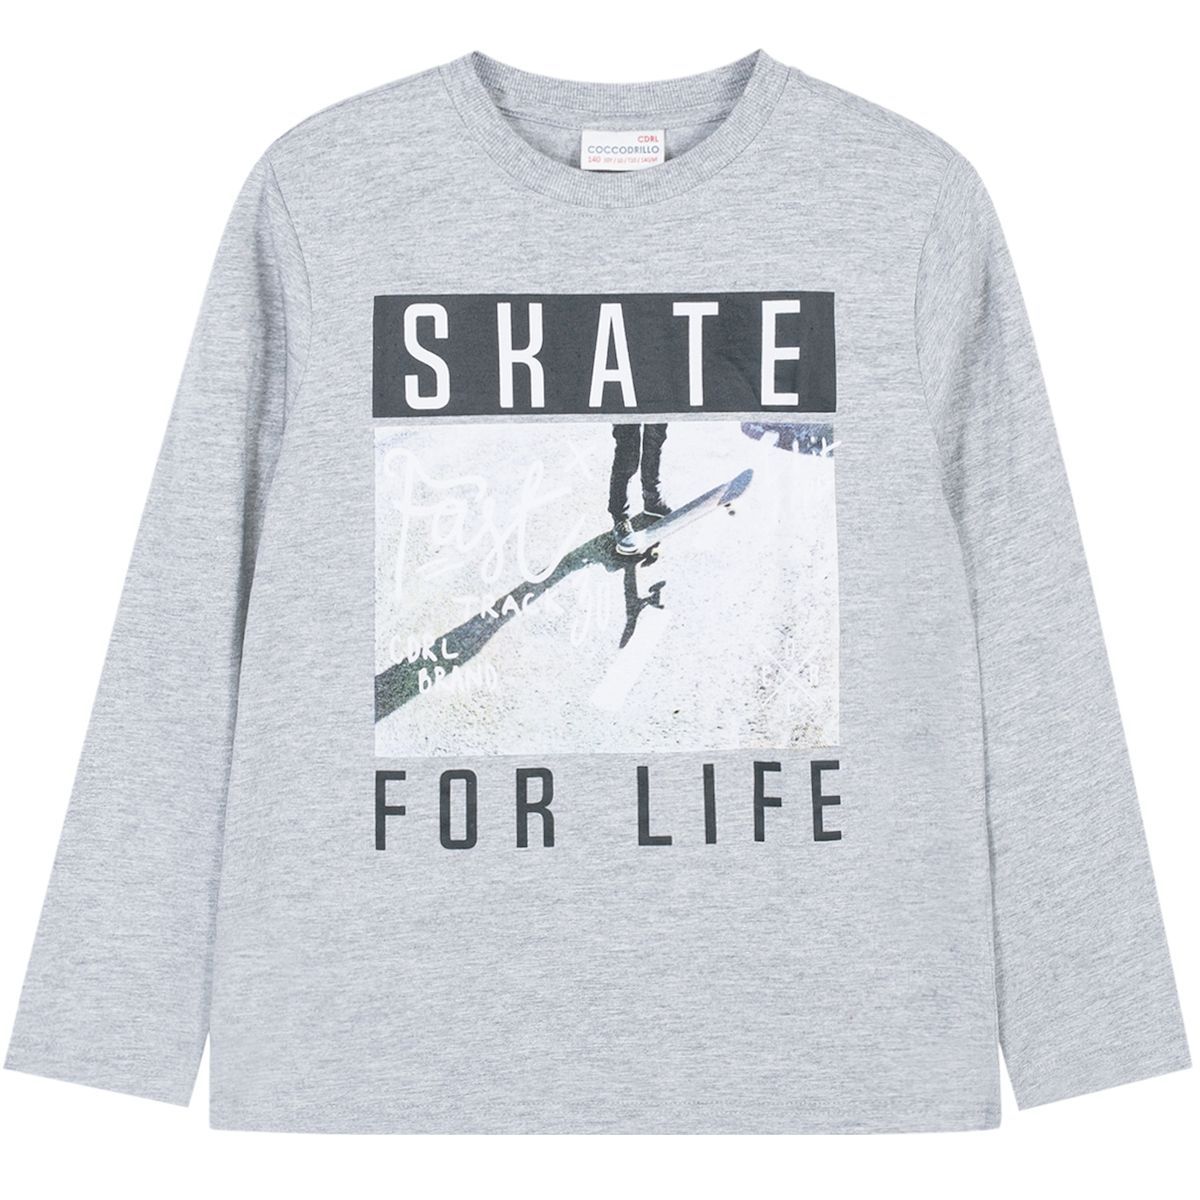    Coccodrillo Skate For Life, : . W191431M2SKA.  128